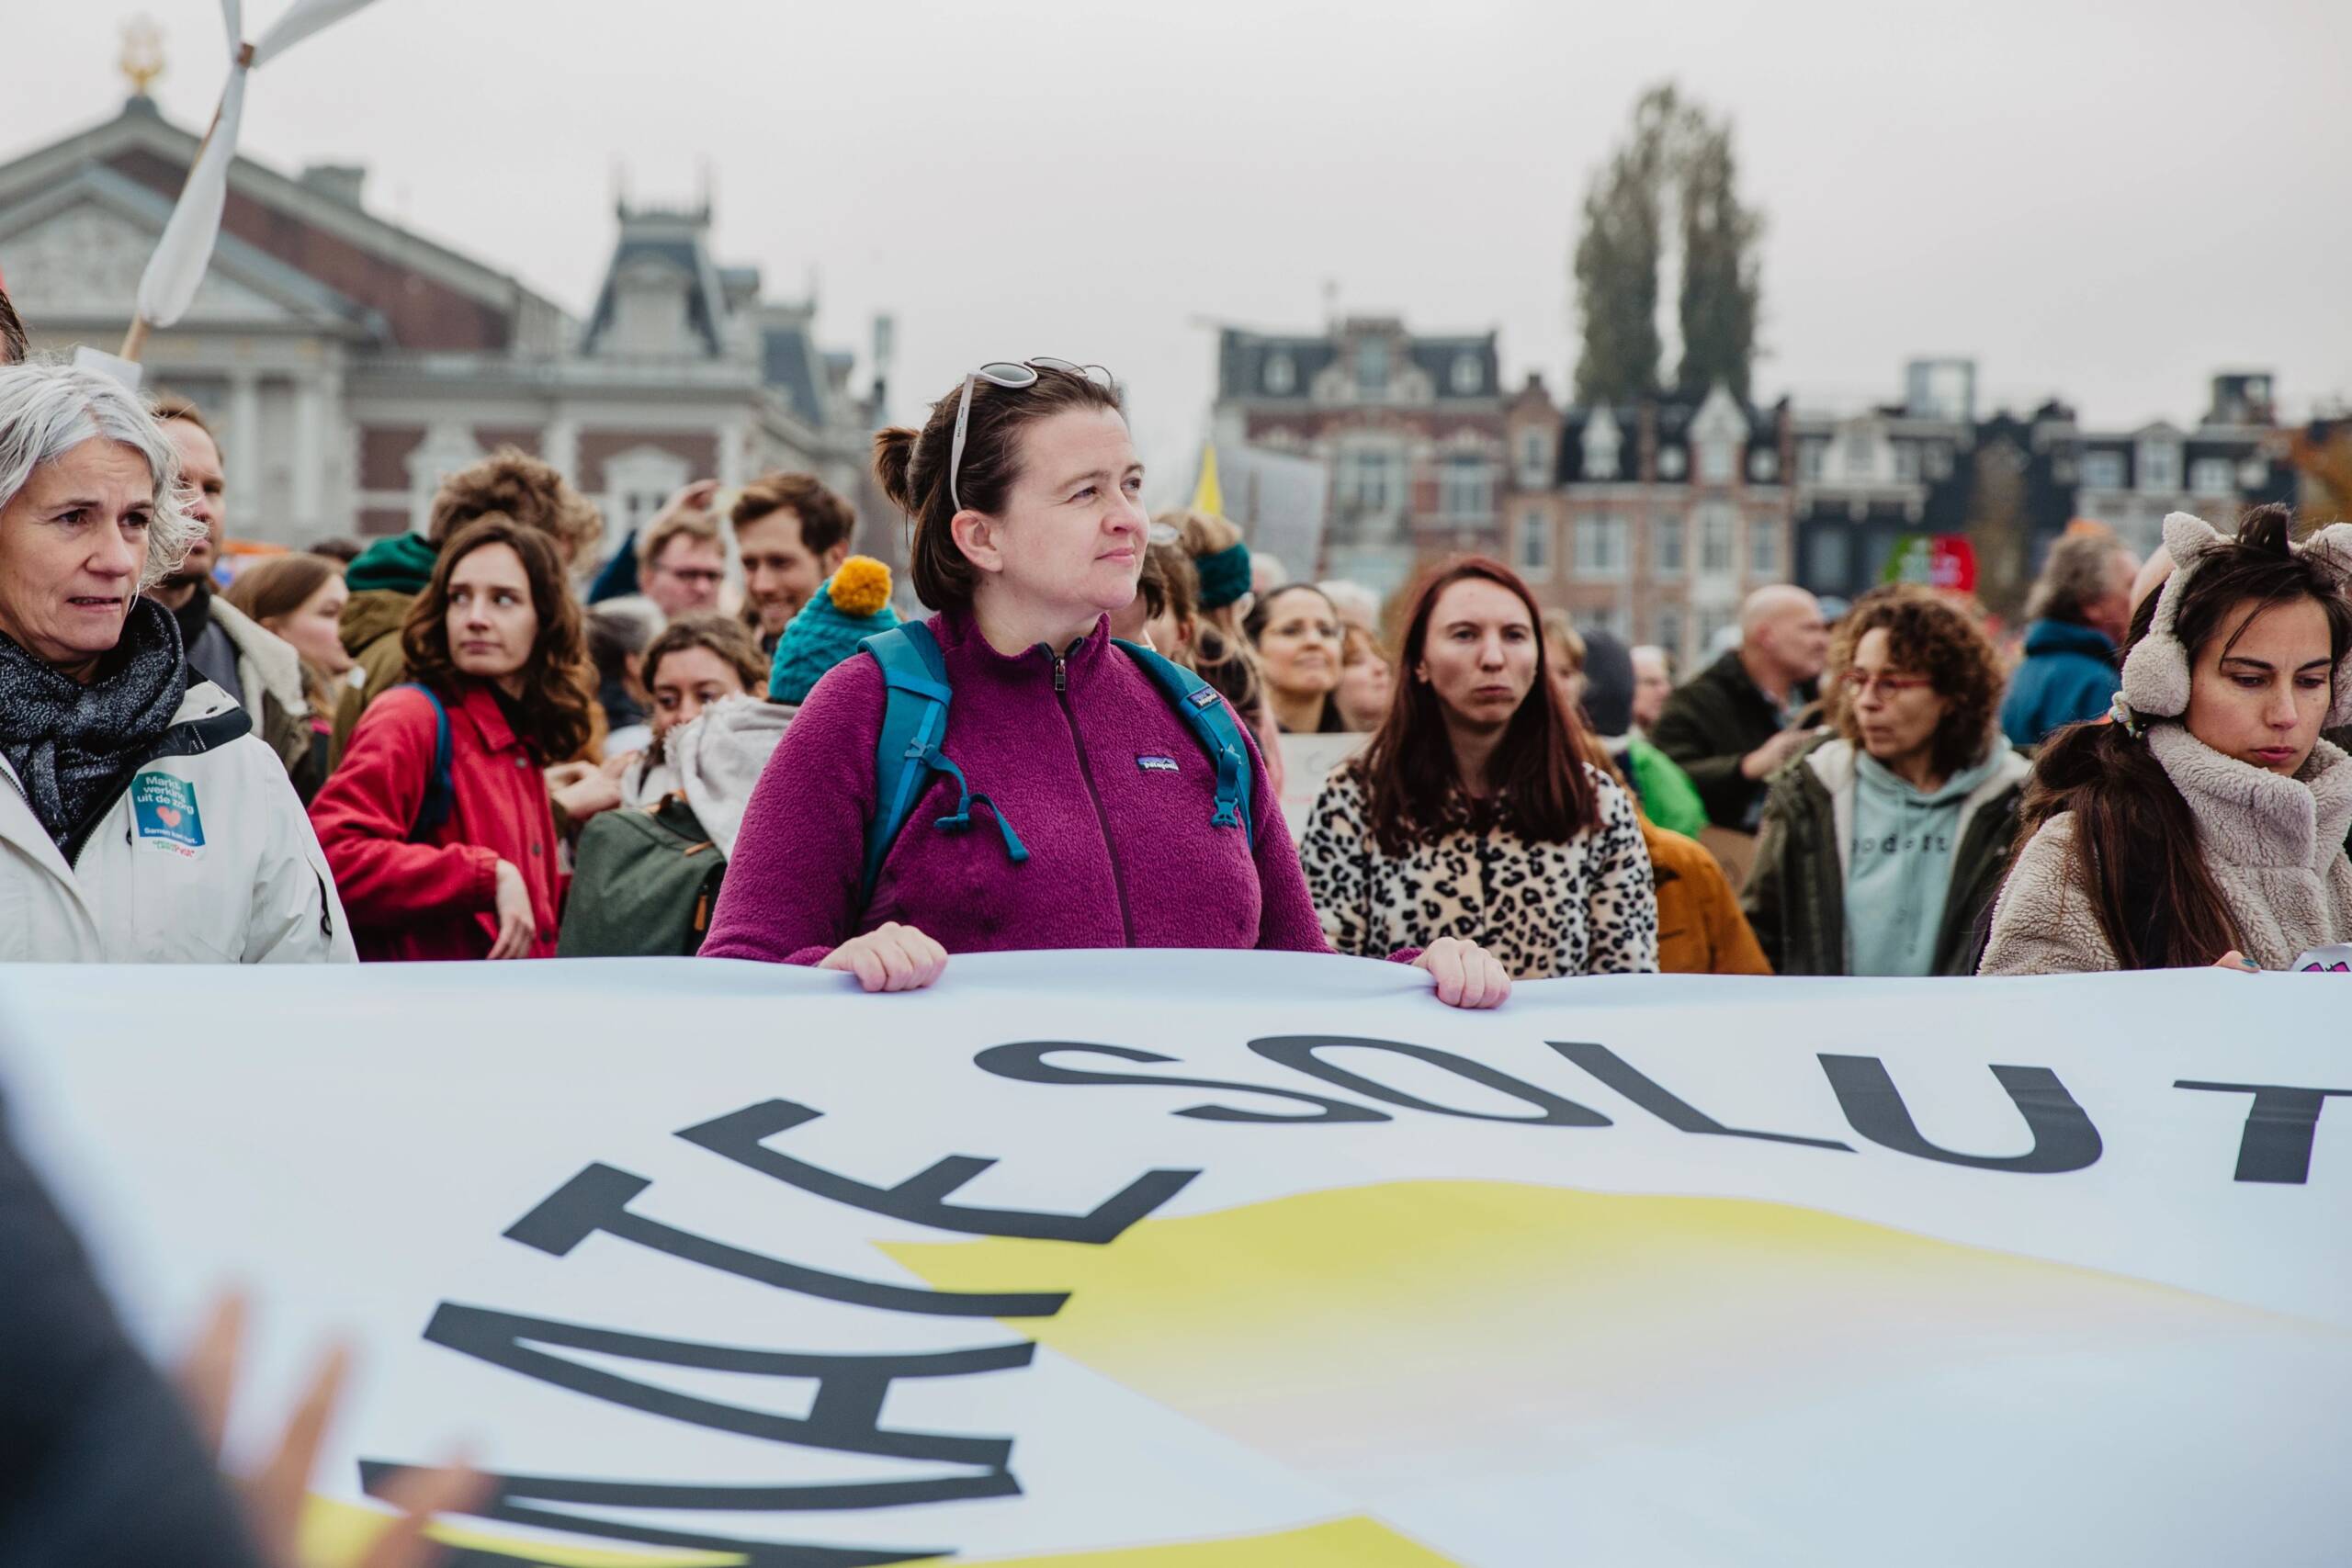 Hollanda, Amsterdam, 12 Kasım: 350.org ve Fossielvrij NL, Amsterdam sokaklarında katılım rekoru kıran bir İklim Yürüyüşünde yenilenebilir enerjiye güç verme çağrısında bulundu. 85.000'den fazla insan sokaklara çıktı. Fotoğraf: Laura Ponchel / Fossielvrij NL